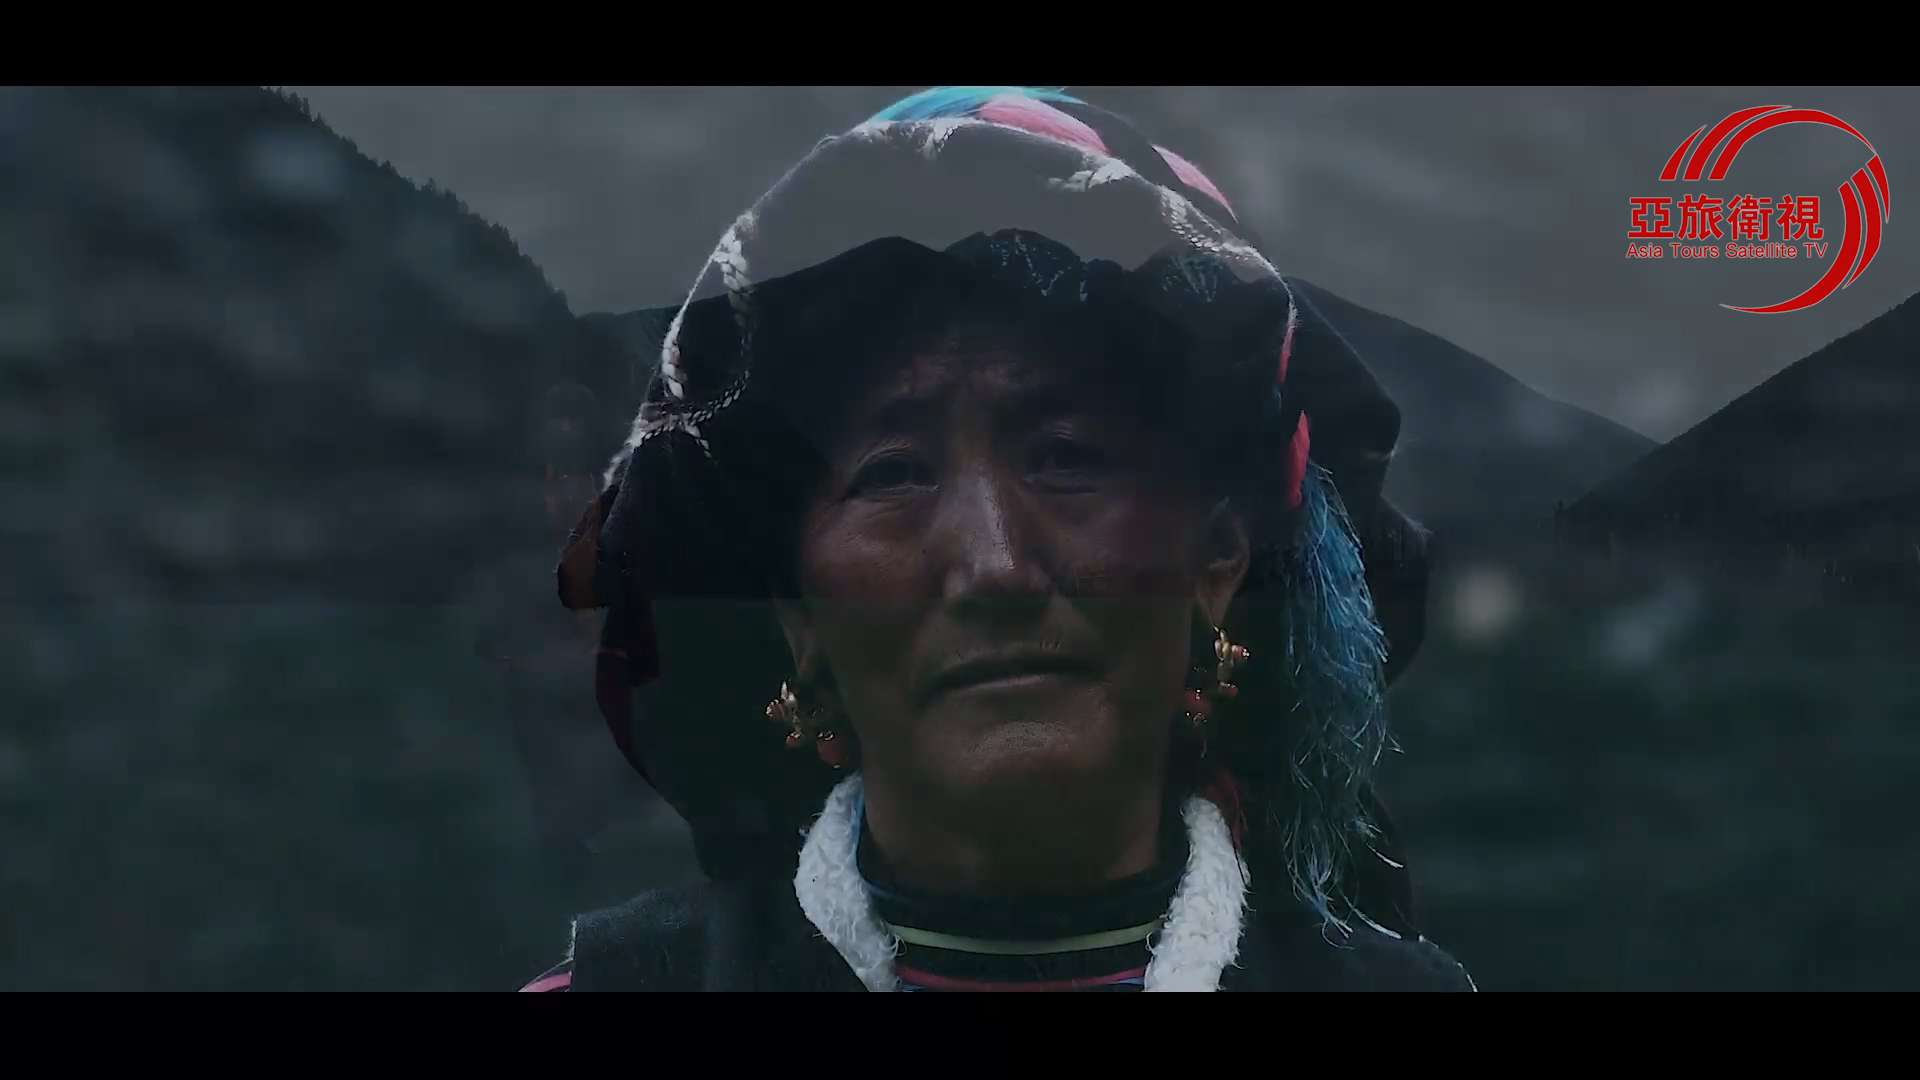 紀錄片《藏地·索朗让布》  Zangdi.Suolangrangbu 